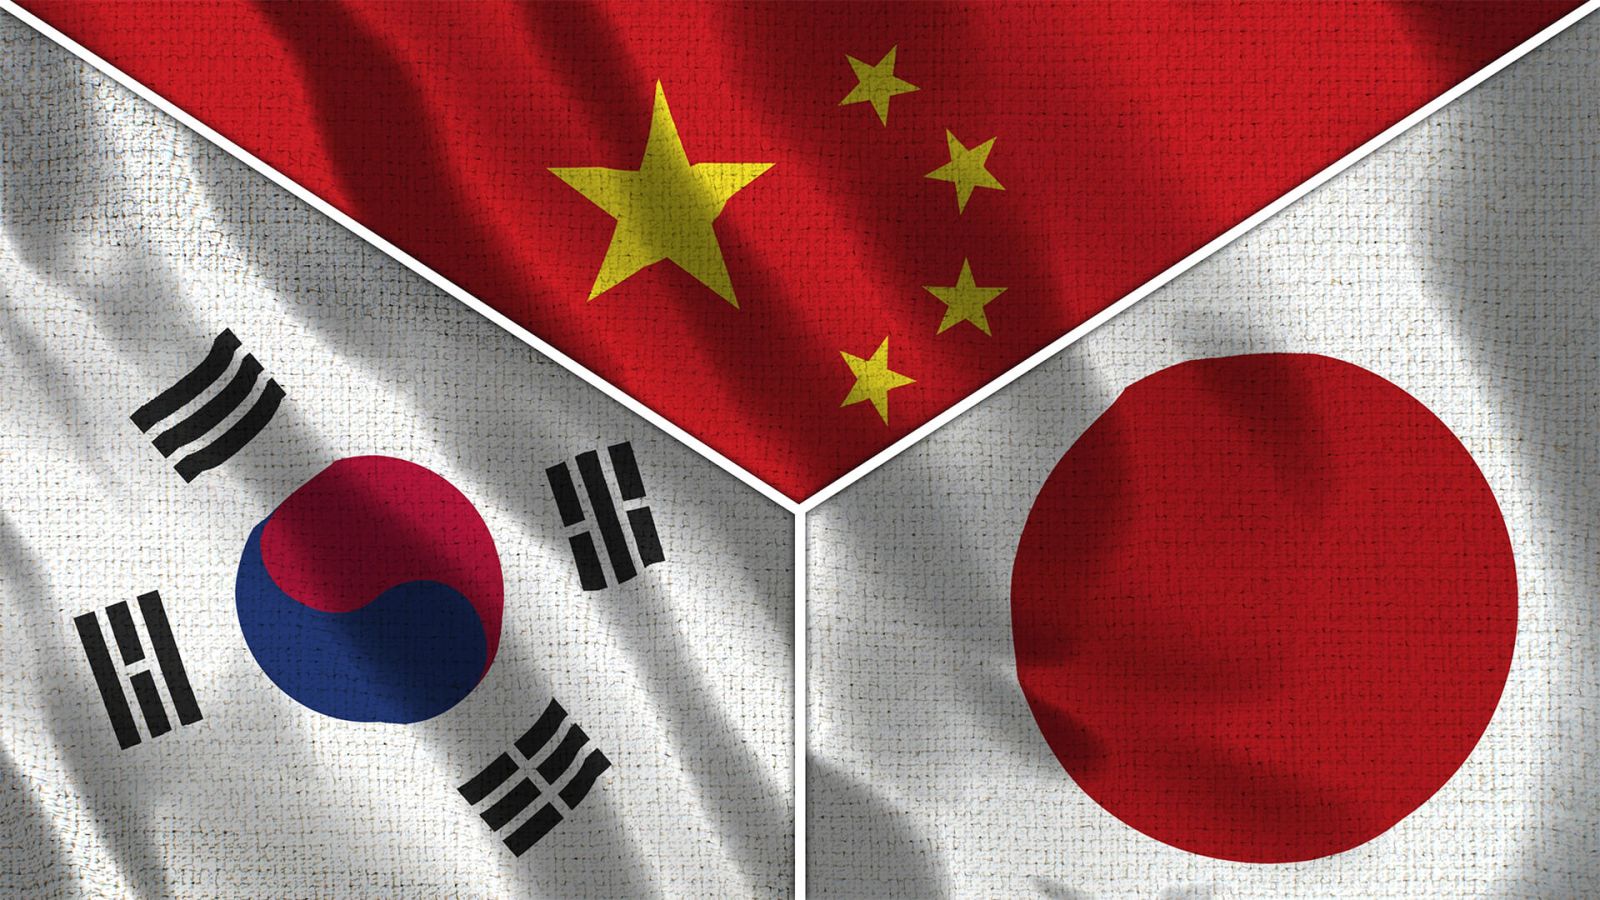 Cənubi Koreya, Çin və Yaponiyanın üçtərəfli sammiti keçiriləcək